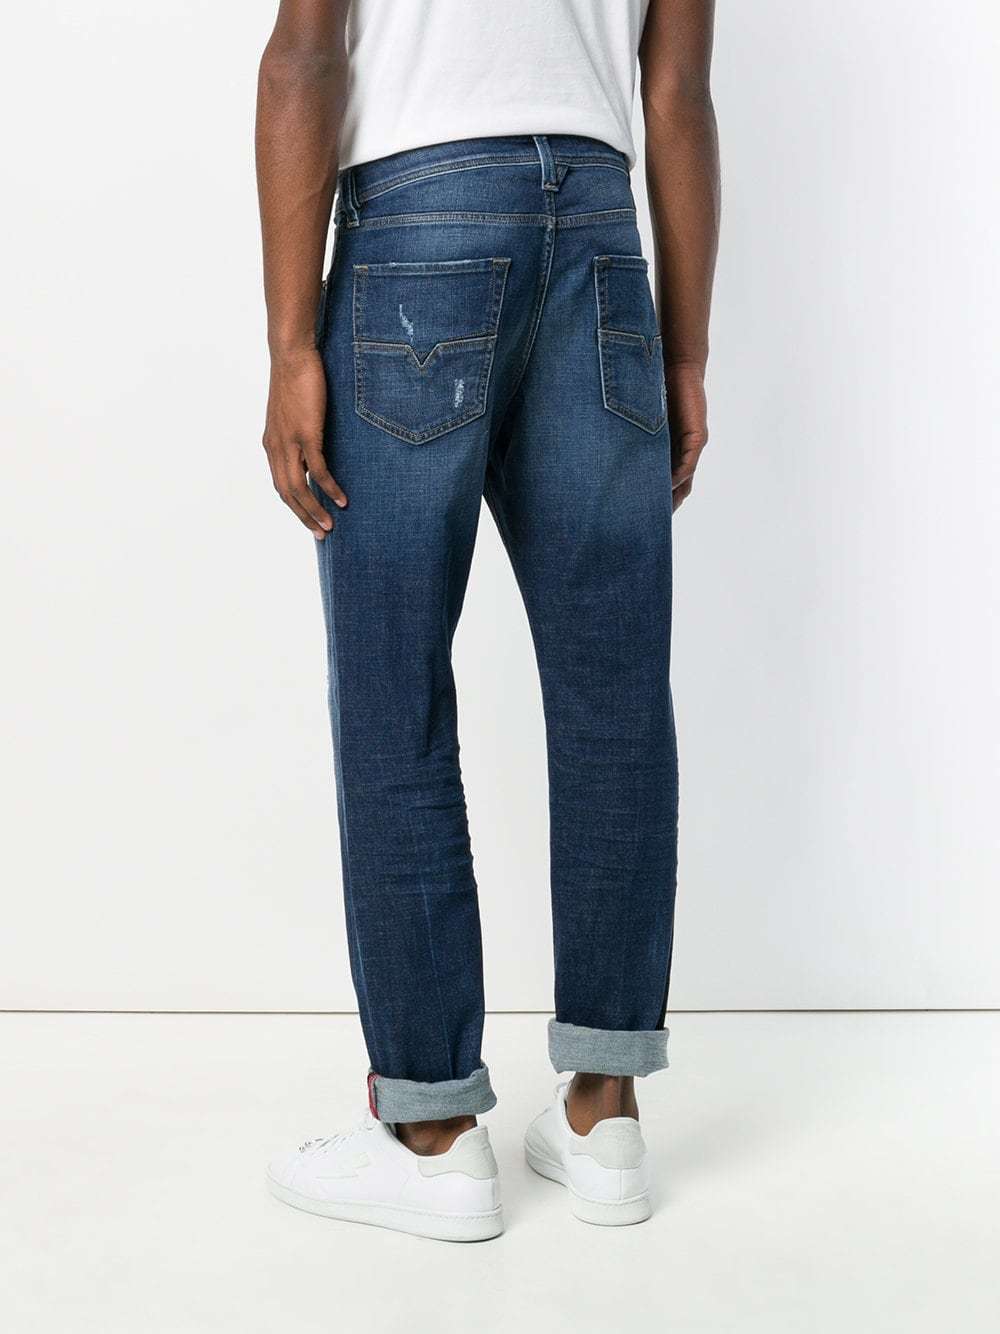 Diesel Larkee Beex 084qt Jeans, $104 | farfetch.com | Lookastic